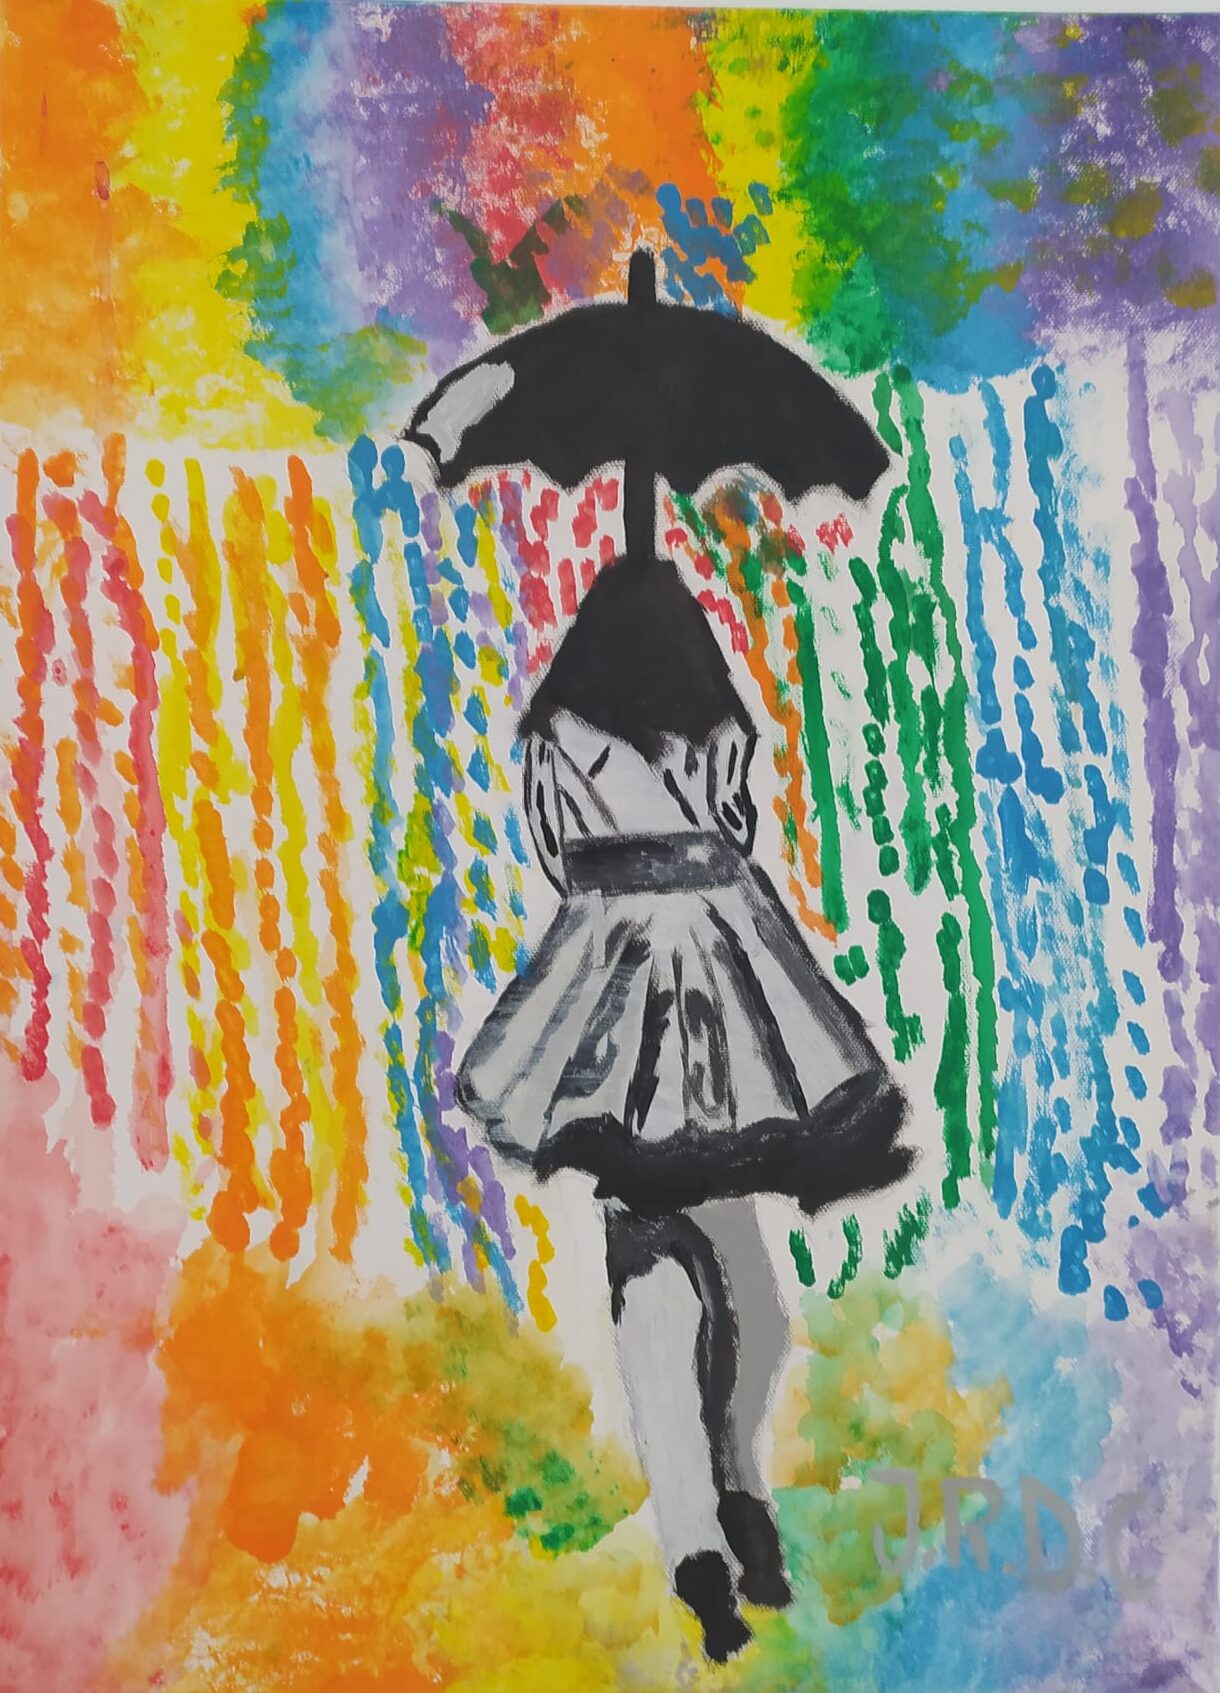 Ver Cantando bajo la lluvia de colores